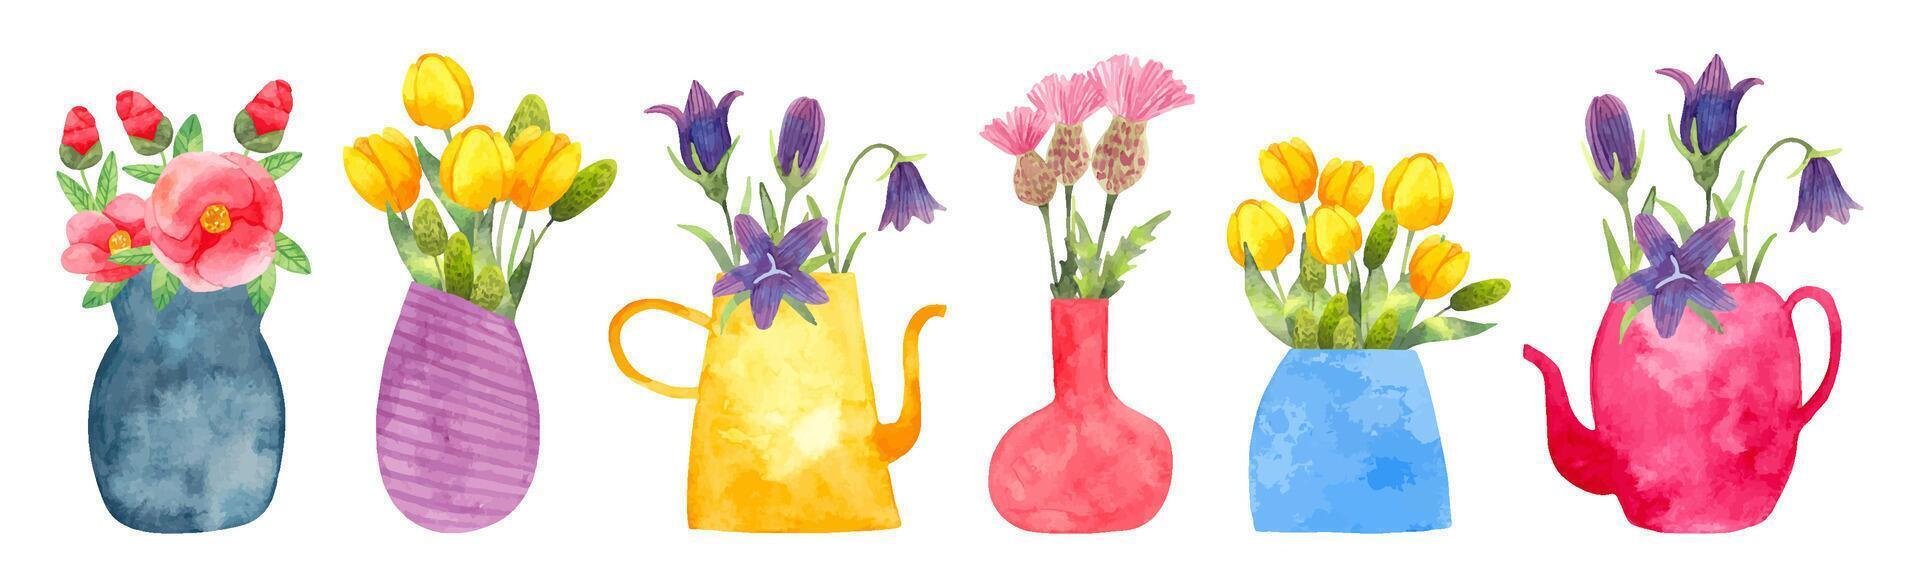 reeks van bloemen in een vaas.japans camelia, tulpen, klokje, distel.waterverf illustratie.hand getrokken gemakkelijk gestileerde stijl. botanisch tuin clip art voor gemakkelijk en elegant ontwerp. vector